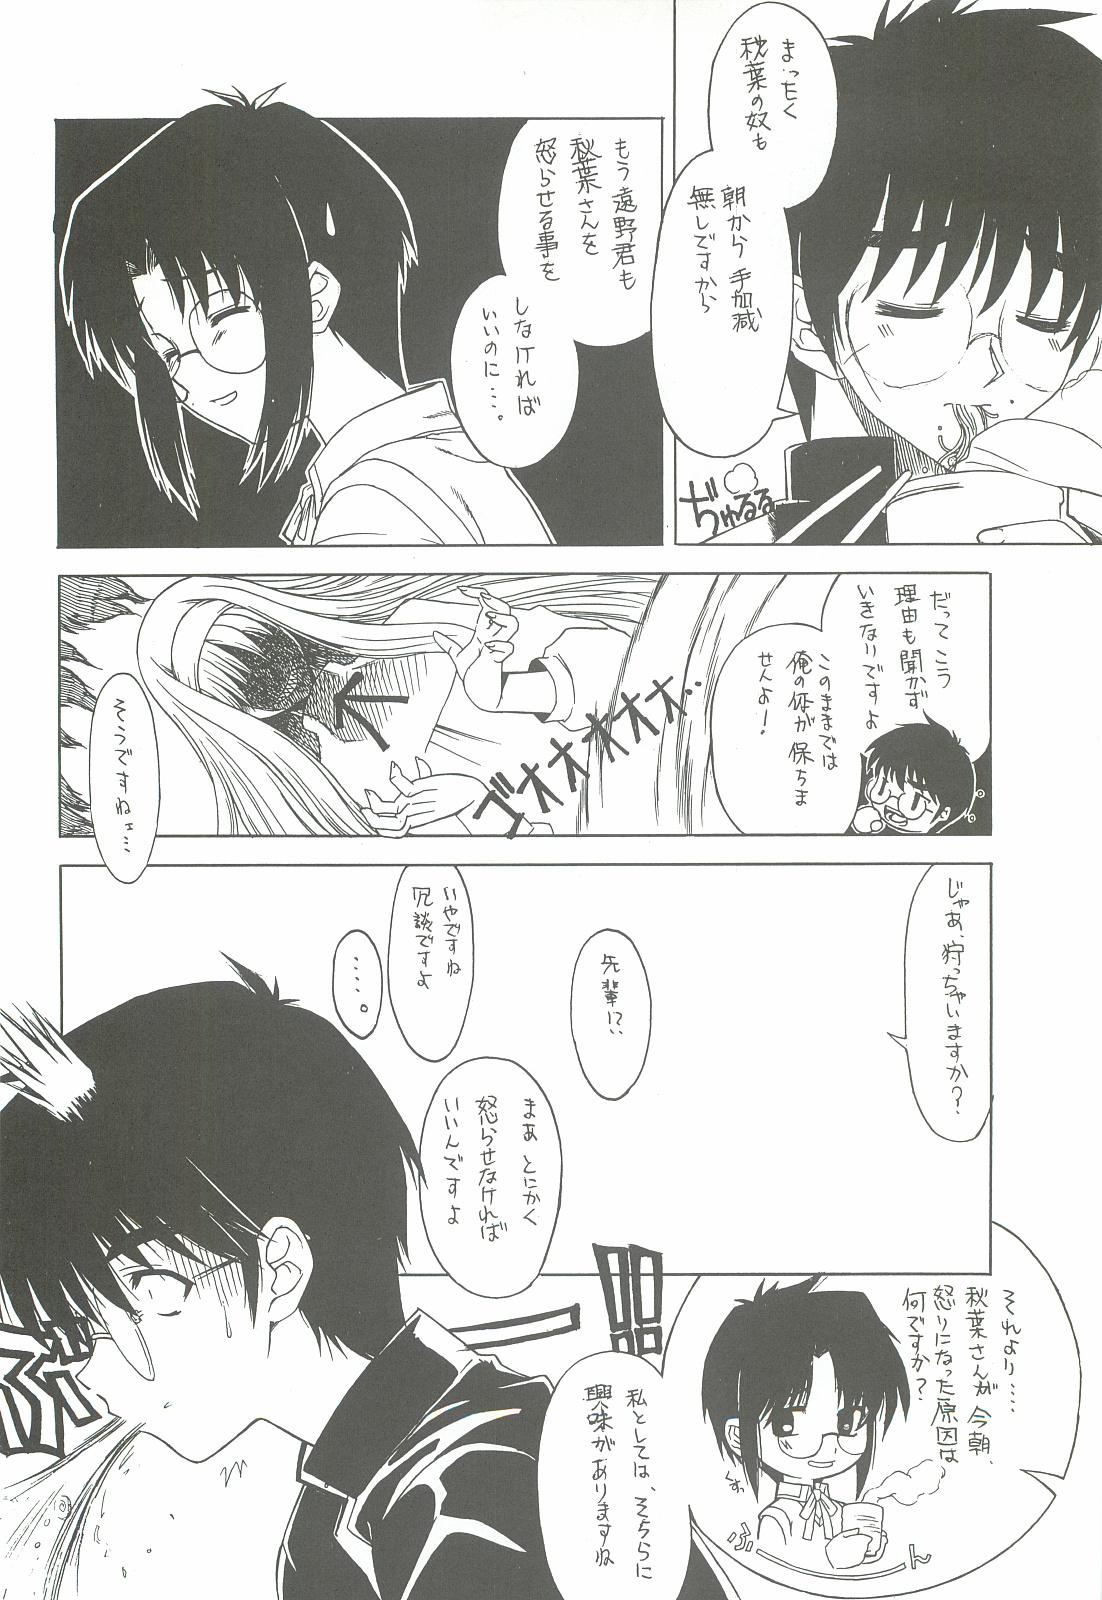 Alt Sougetsu no Kimi Eien no Getsukan - Tsukihime With - Page 11